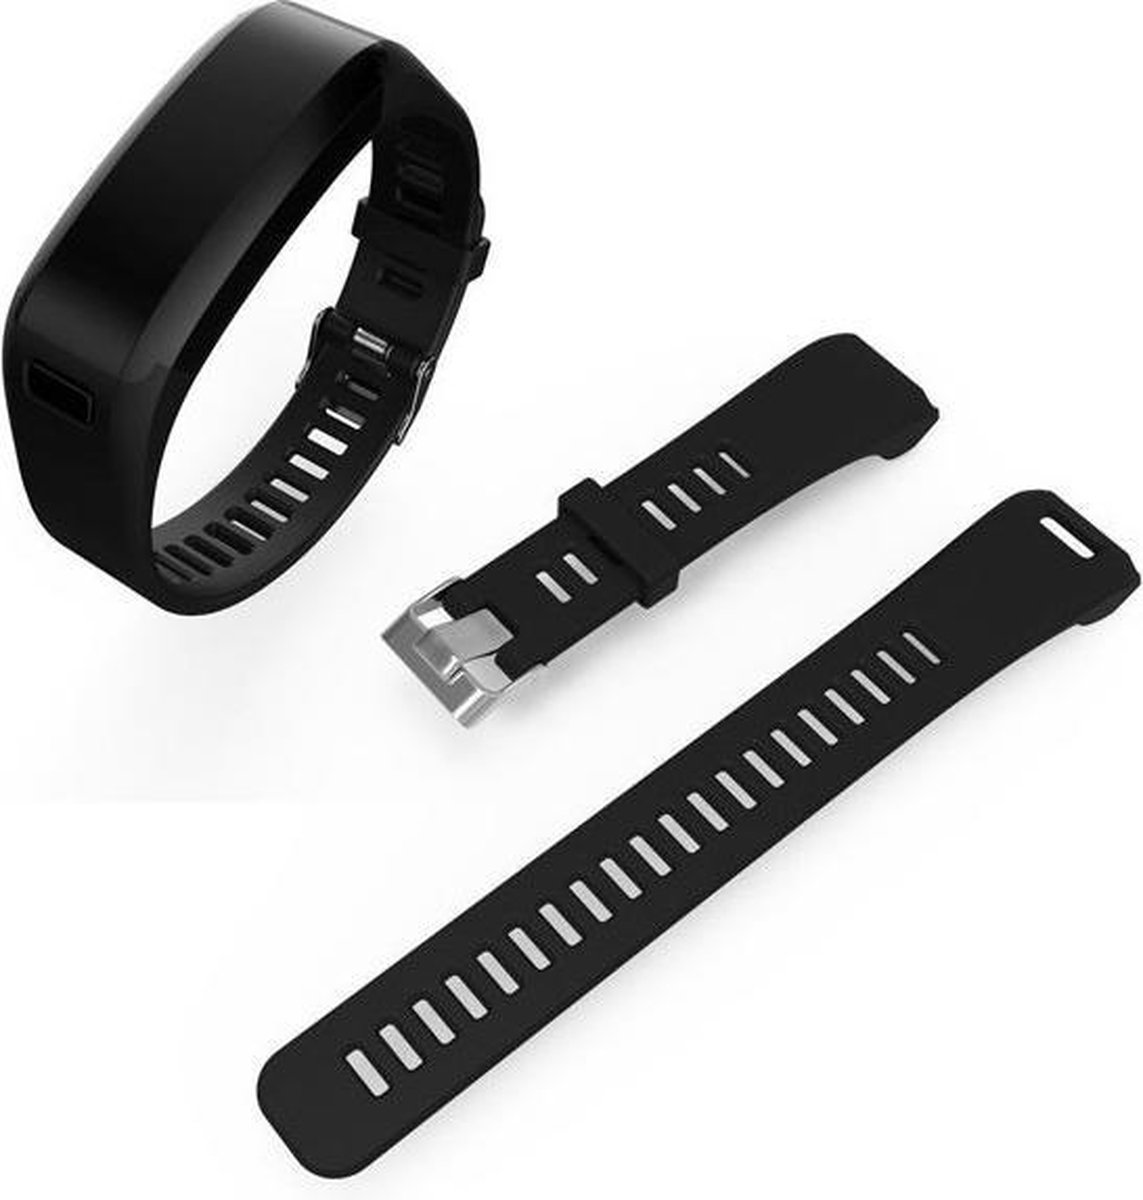 Vervangend bandje voor de Garmin Vivosmart HR+ smartwatch - zwart | bol.com